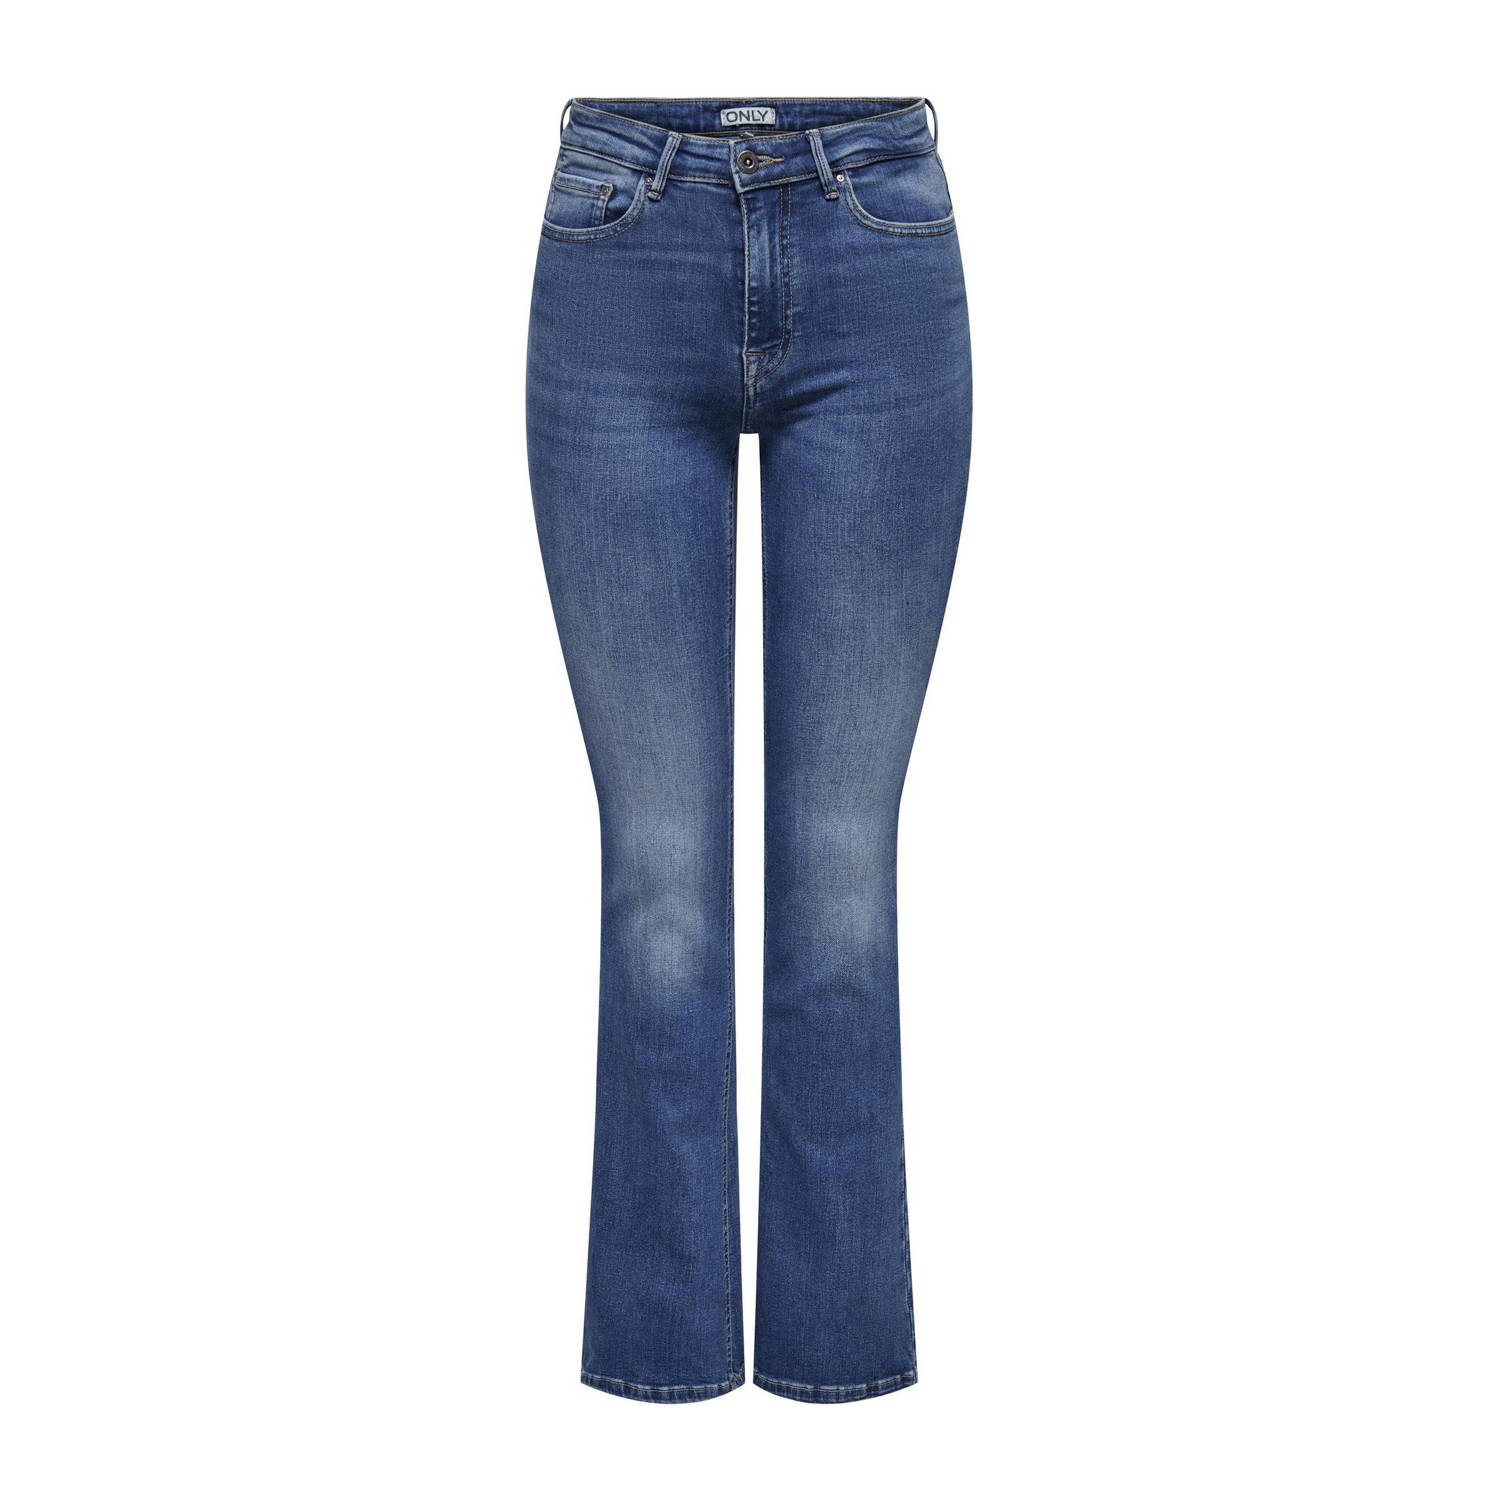 ONLY high waist flared jeans ONLPAOLA light blue denim